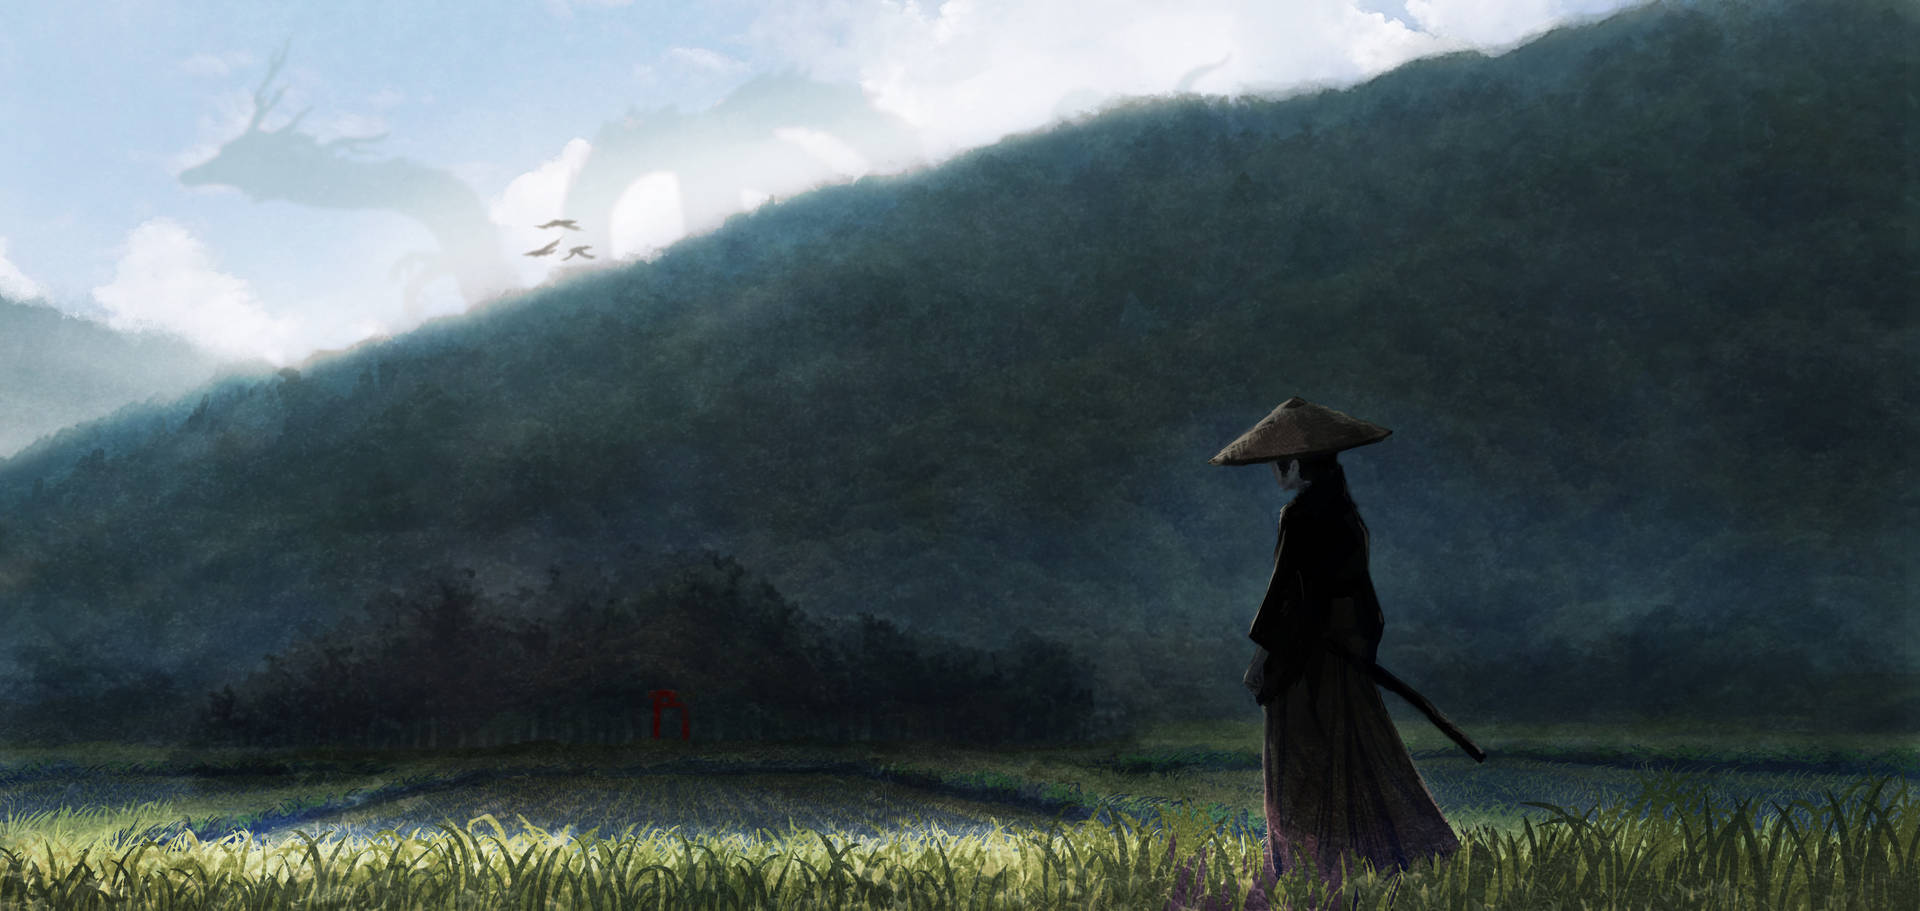 En bestemt Anime Samurai kriger står imod stormen. Wallpaper